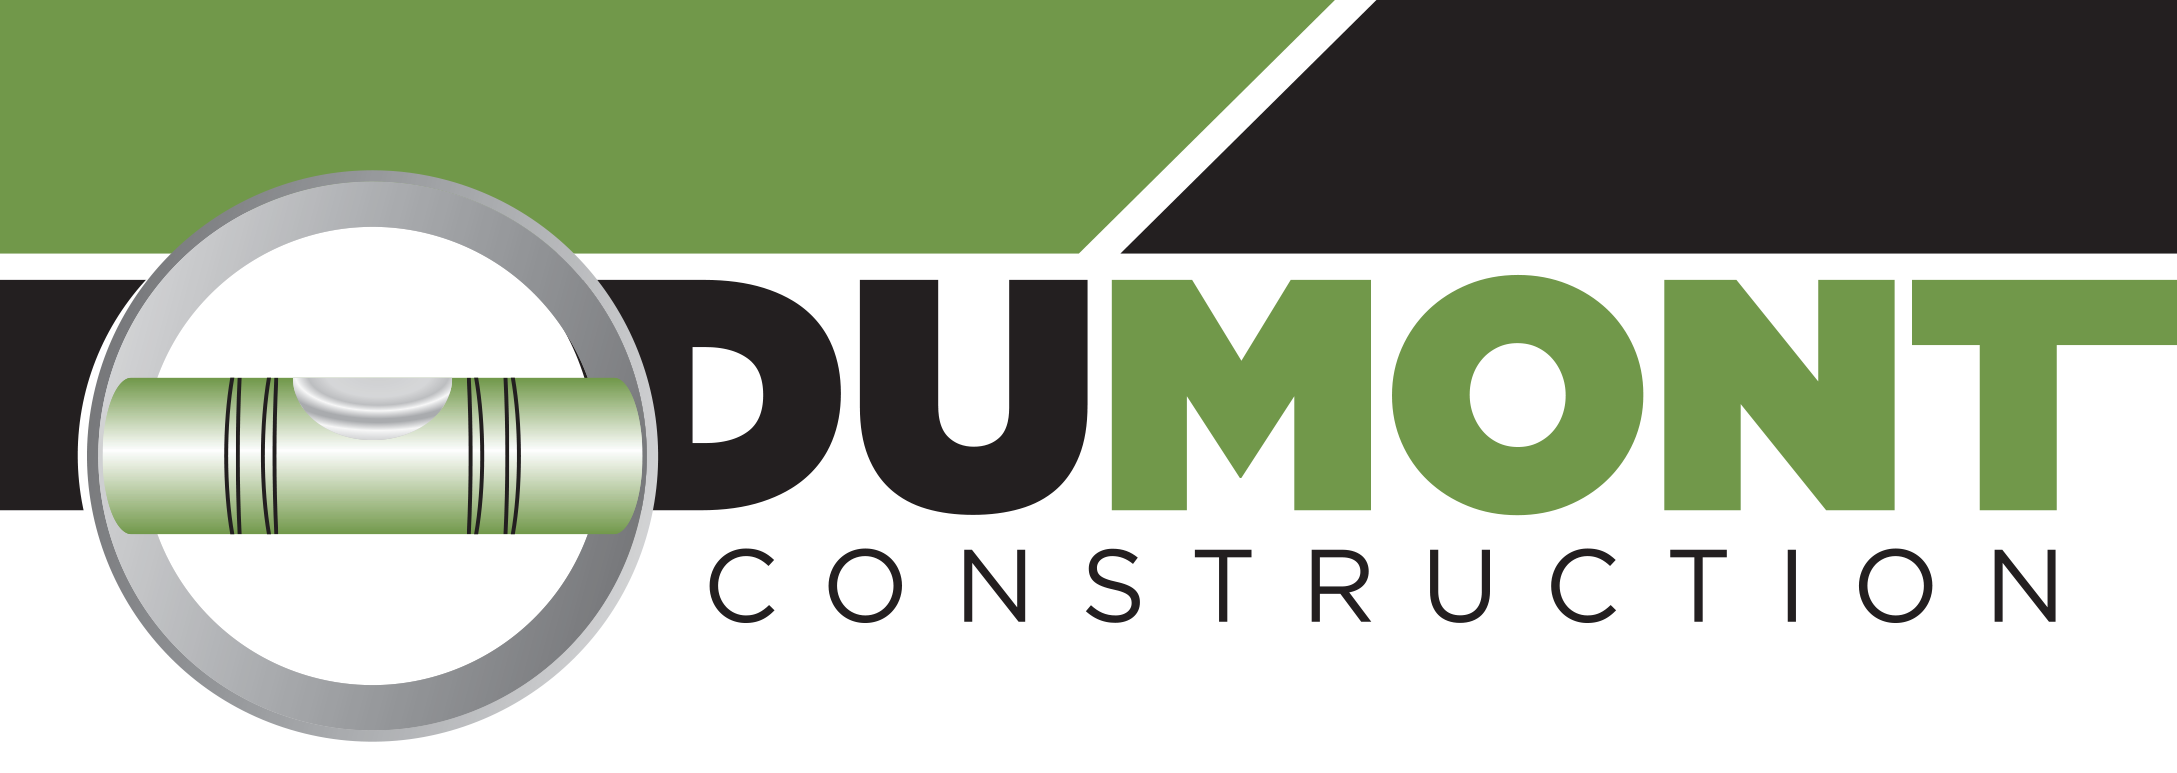 Dumont Construction